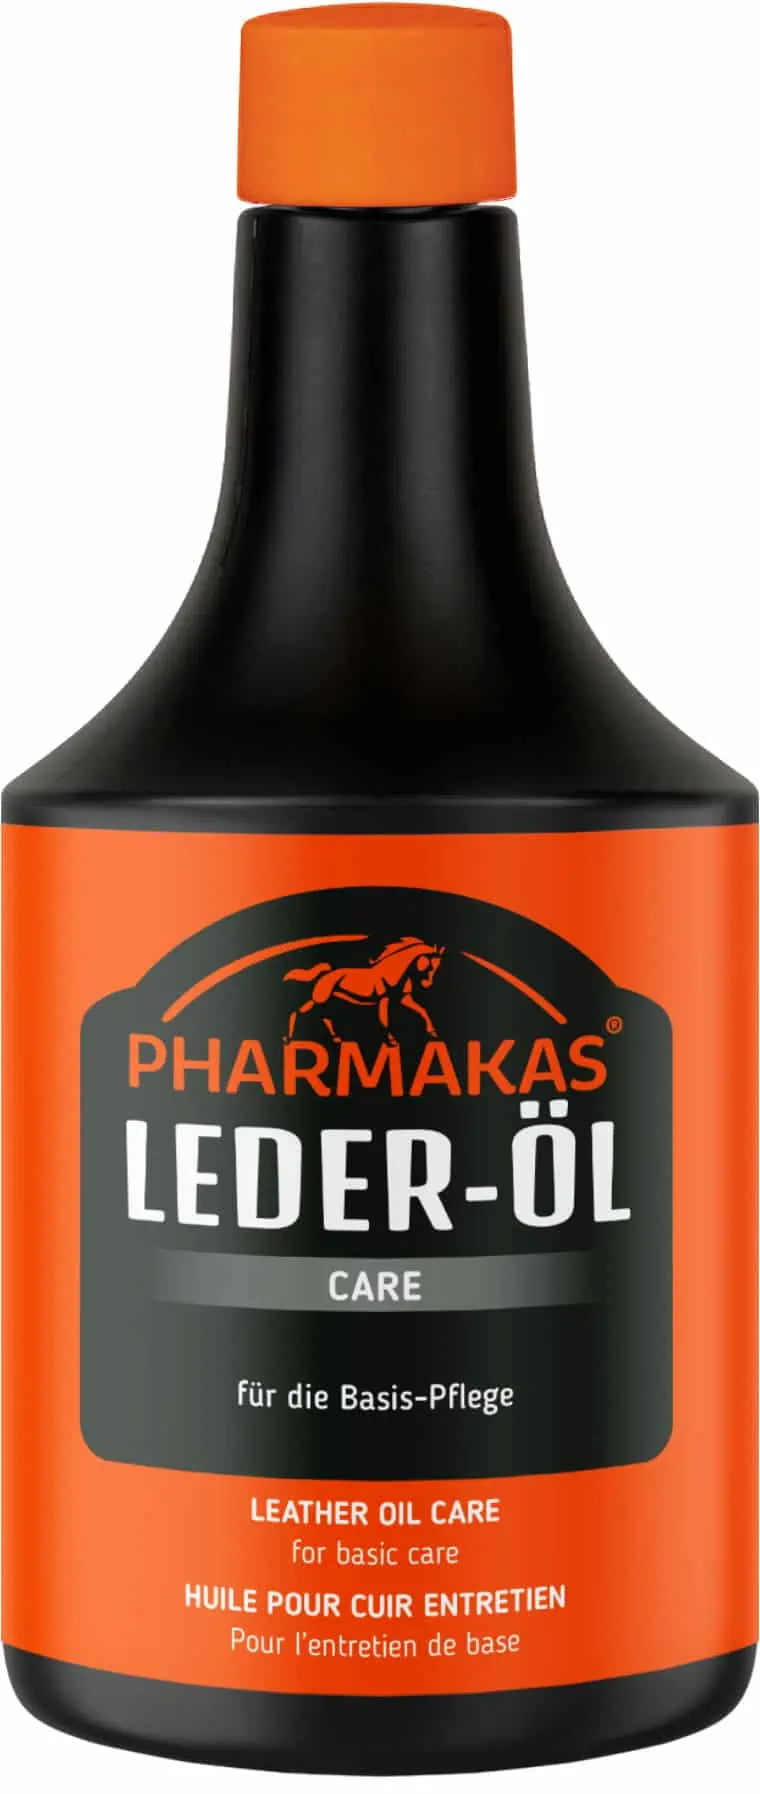 Pharmakas Leather Oil